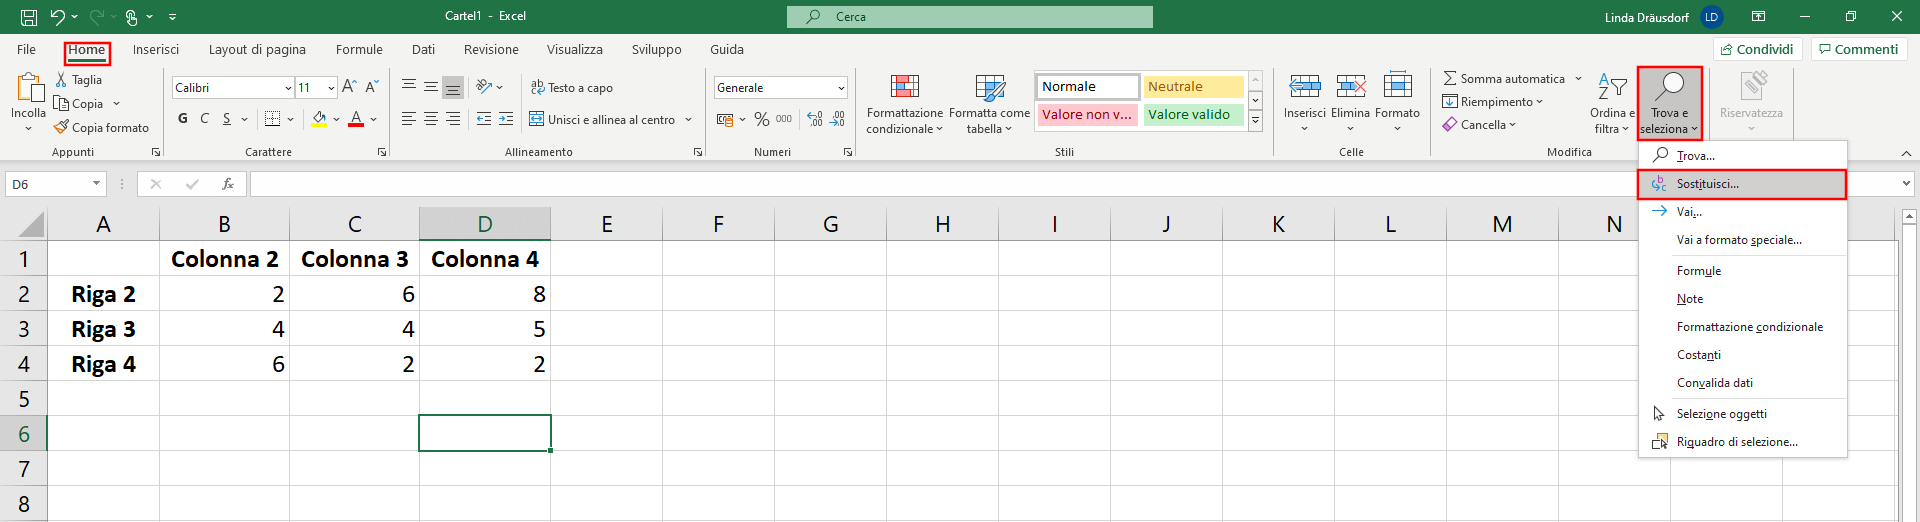 Finestra di dialogo di Excel con le funzioni “Trova” e “Sostituisci”